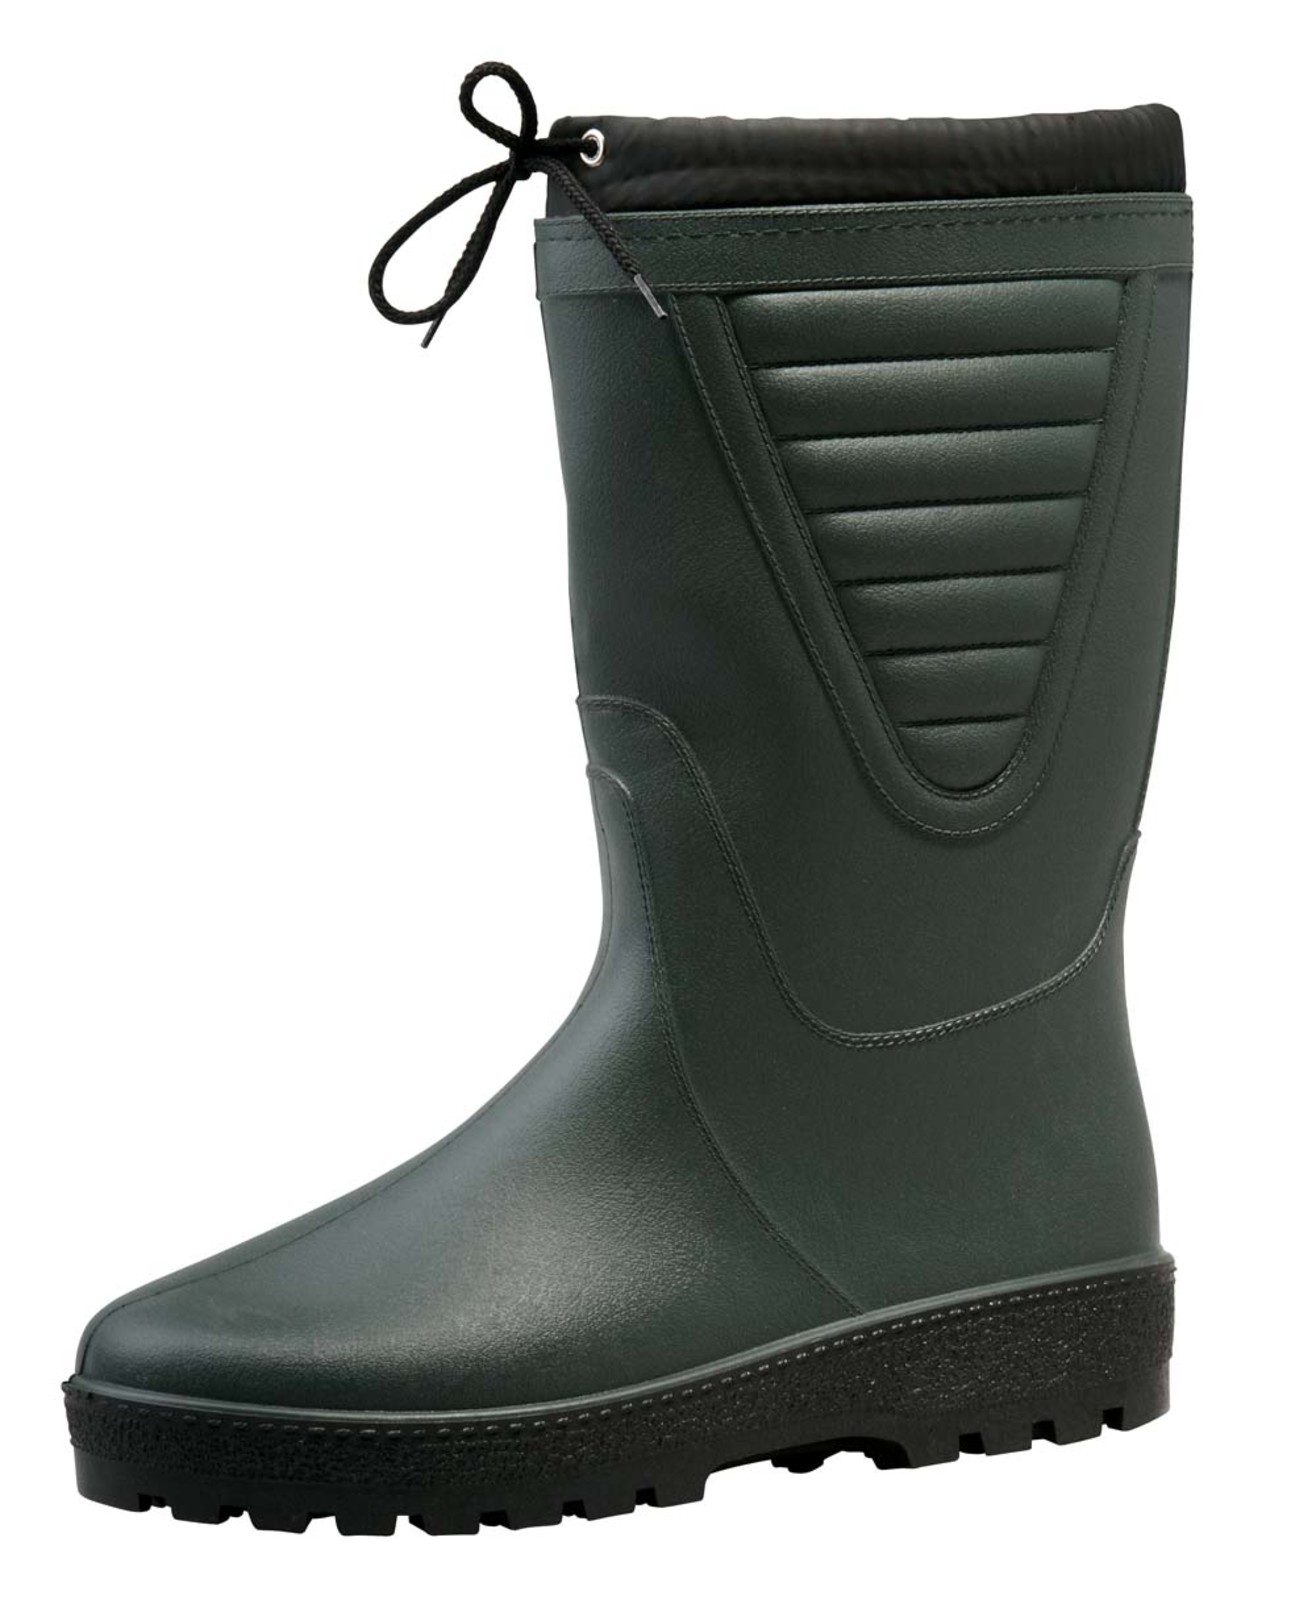 Zateplené čižmy Boots Polar - veľkosť: 39, farba: zelená